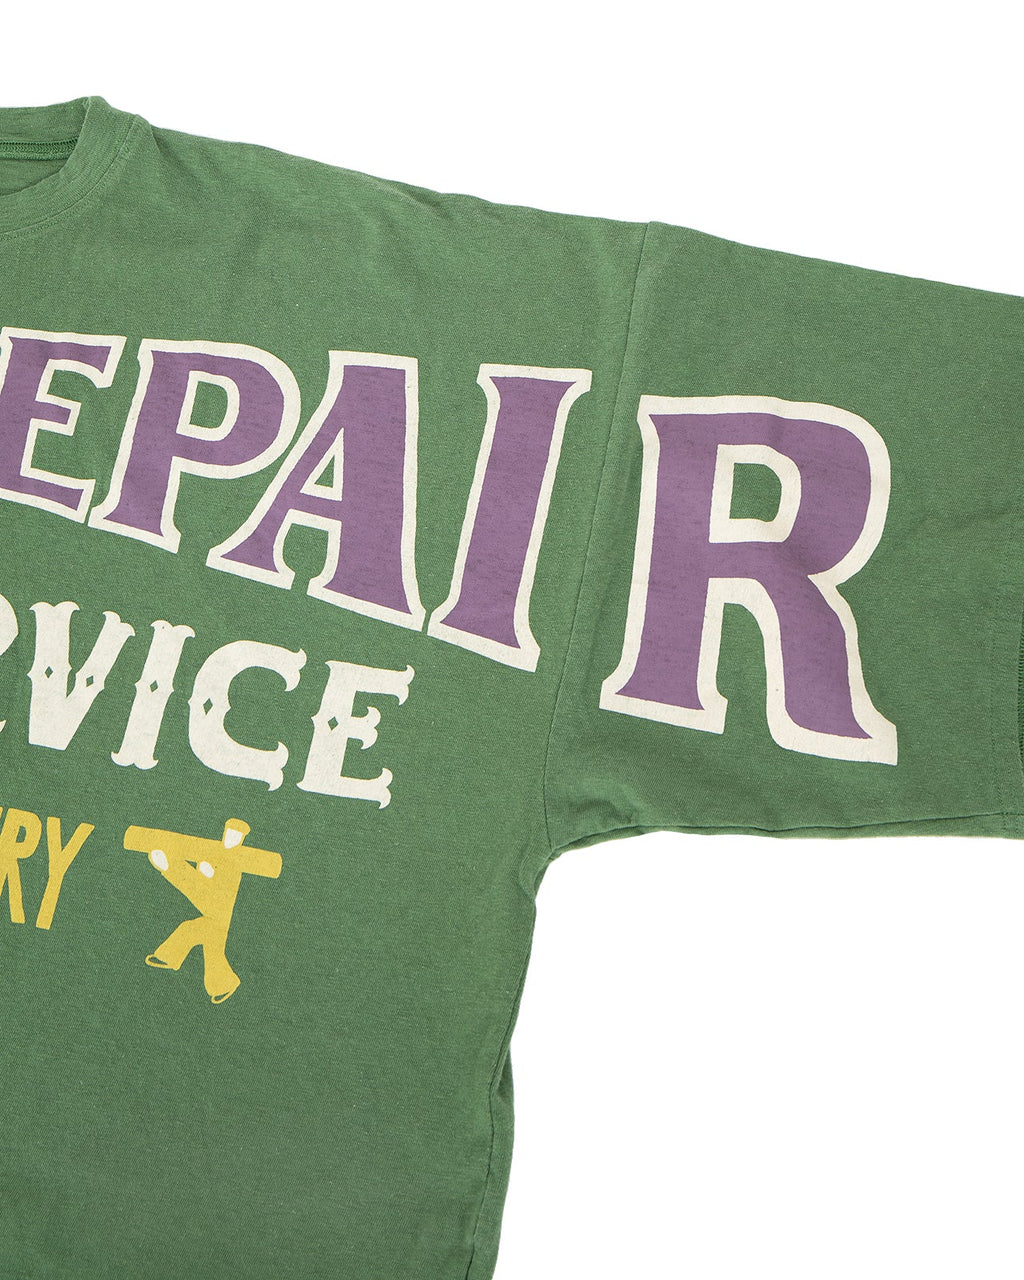 Kapital Jersey Huge T-Shirt, Denim Repair, Green